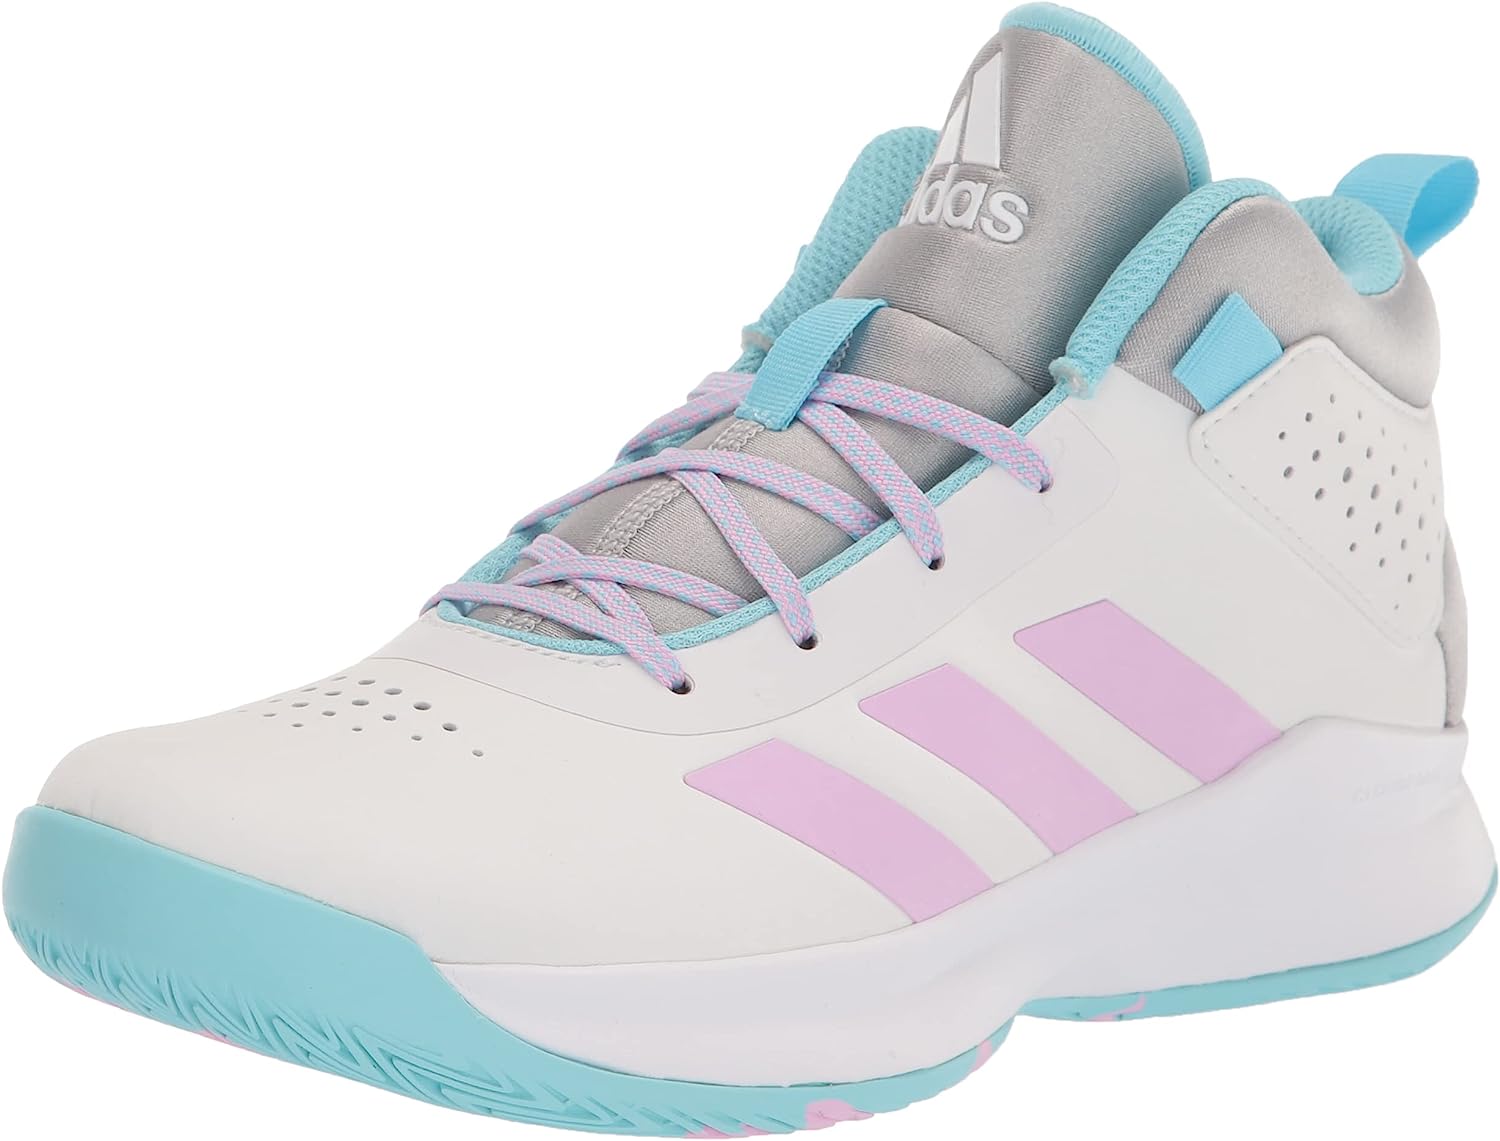 adidas Unisex-Child Cross Em Up 5 Basketball Shoe